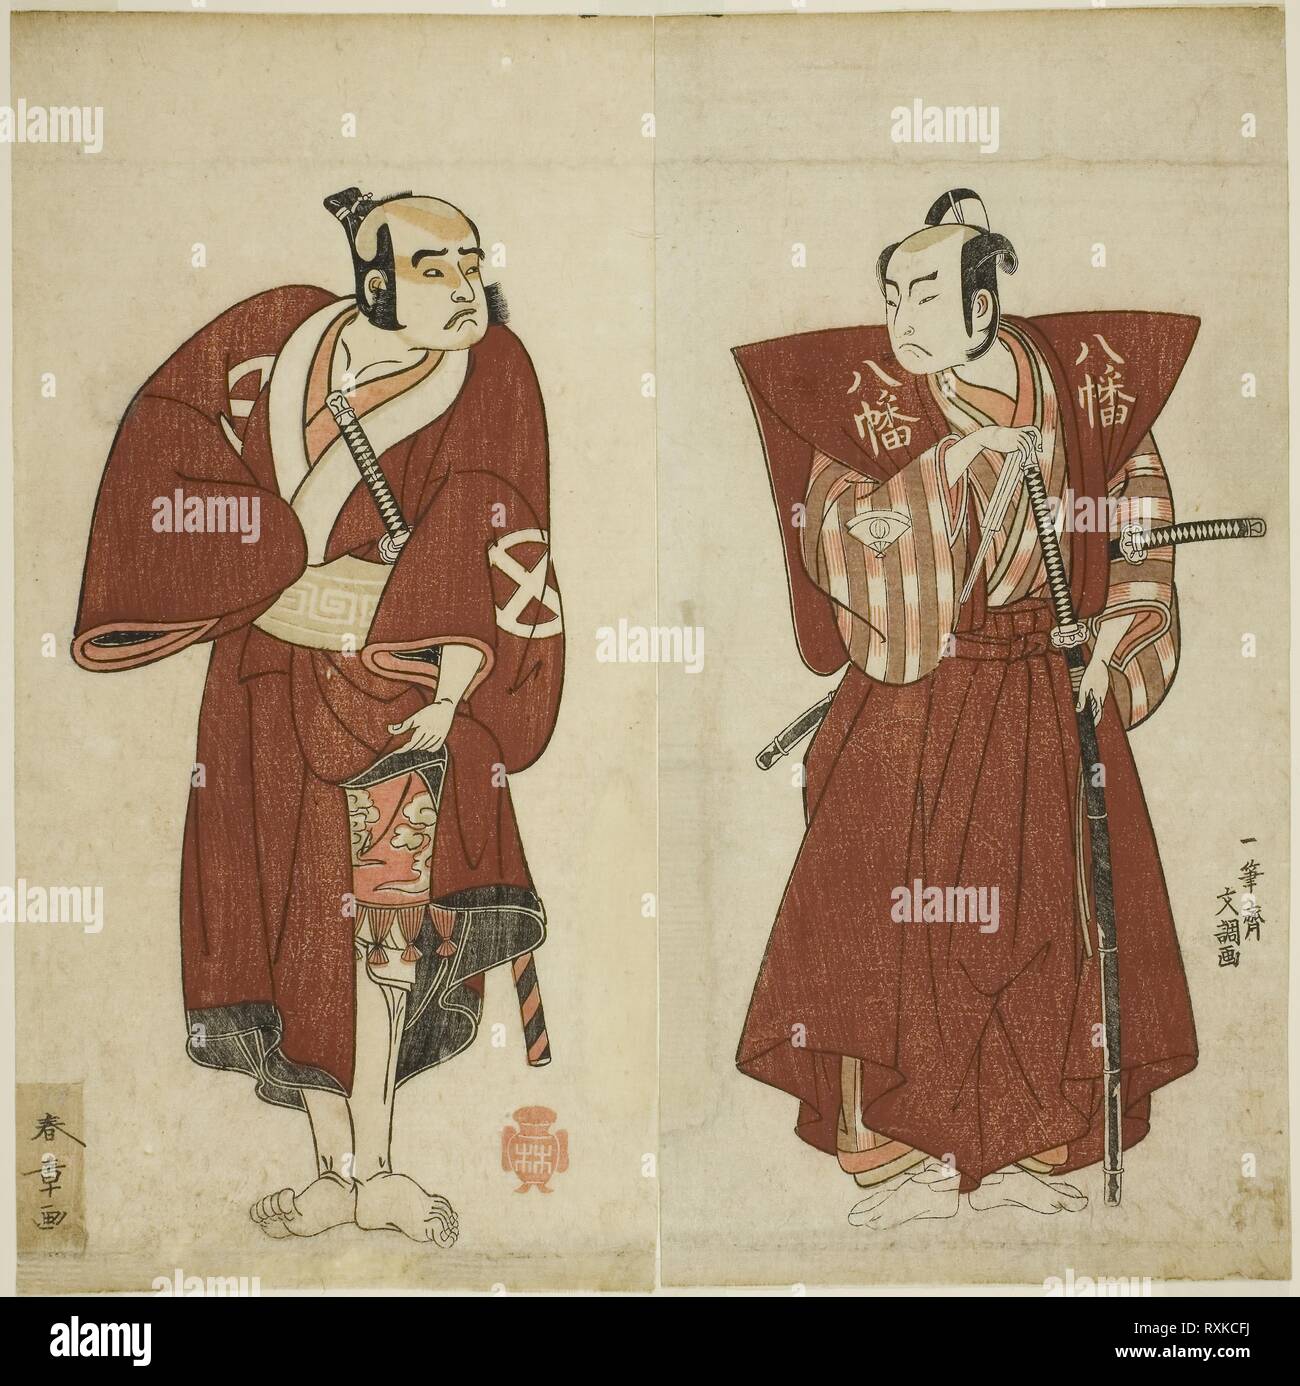 Die Schauspieler Onoe Matsusuke ich als Yawata keine Saburo (rechts), und Otani Tomoemon ich als Yakko Emohei (links), im Spiel - Myoto giku Izu keine Kisewata, durchgeführt an der Ichimura Theater im elften Monat, 1770. Shunsho Katsukawa; Japanisch, 1726-1792; Ippitsusai Buncho; Japanisch, Aktive c. 1755-90. Datum: 1767-1777. Abmessungen: 27,8 x 13,8 cm (10 15/16 x 5 7/16 in.) (getrimmte) (rechts); 27,8 x 14 cm (10 15/16 x 5 1/2 in.) (getrimmte) (links). Farbe holzschnitt; Diptychon; Illustrationen aus der späteren Ausgabe des Buches Ehon Butai Ogi. Herkunft: Japan. Museum: Das Chicago Art Institute. Stockfoto